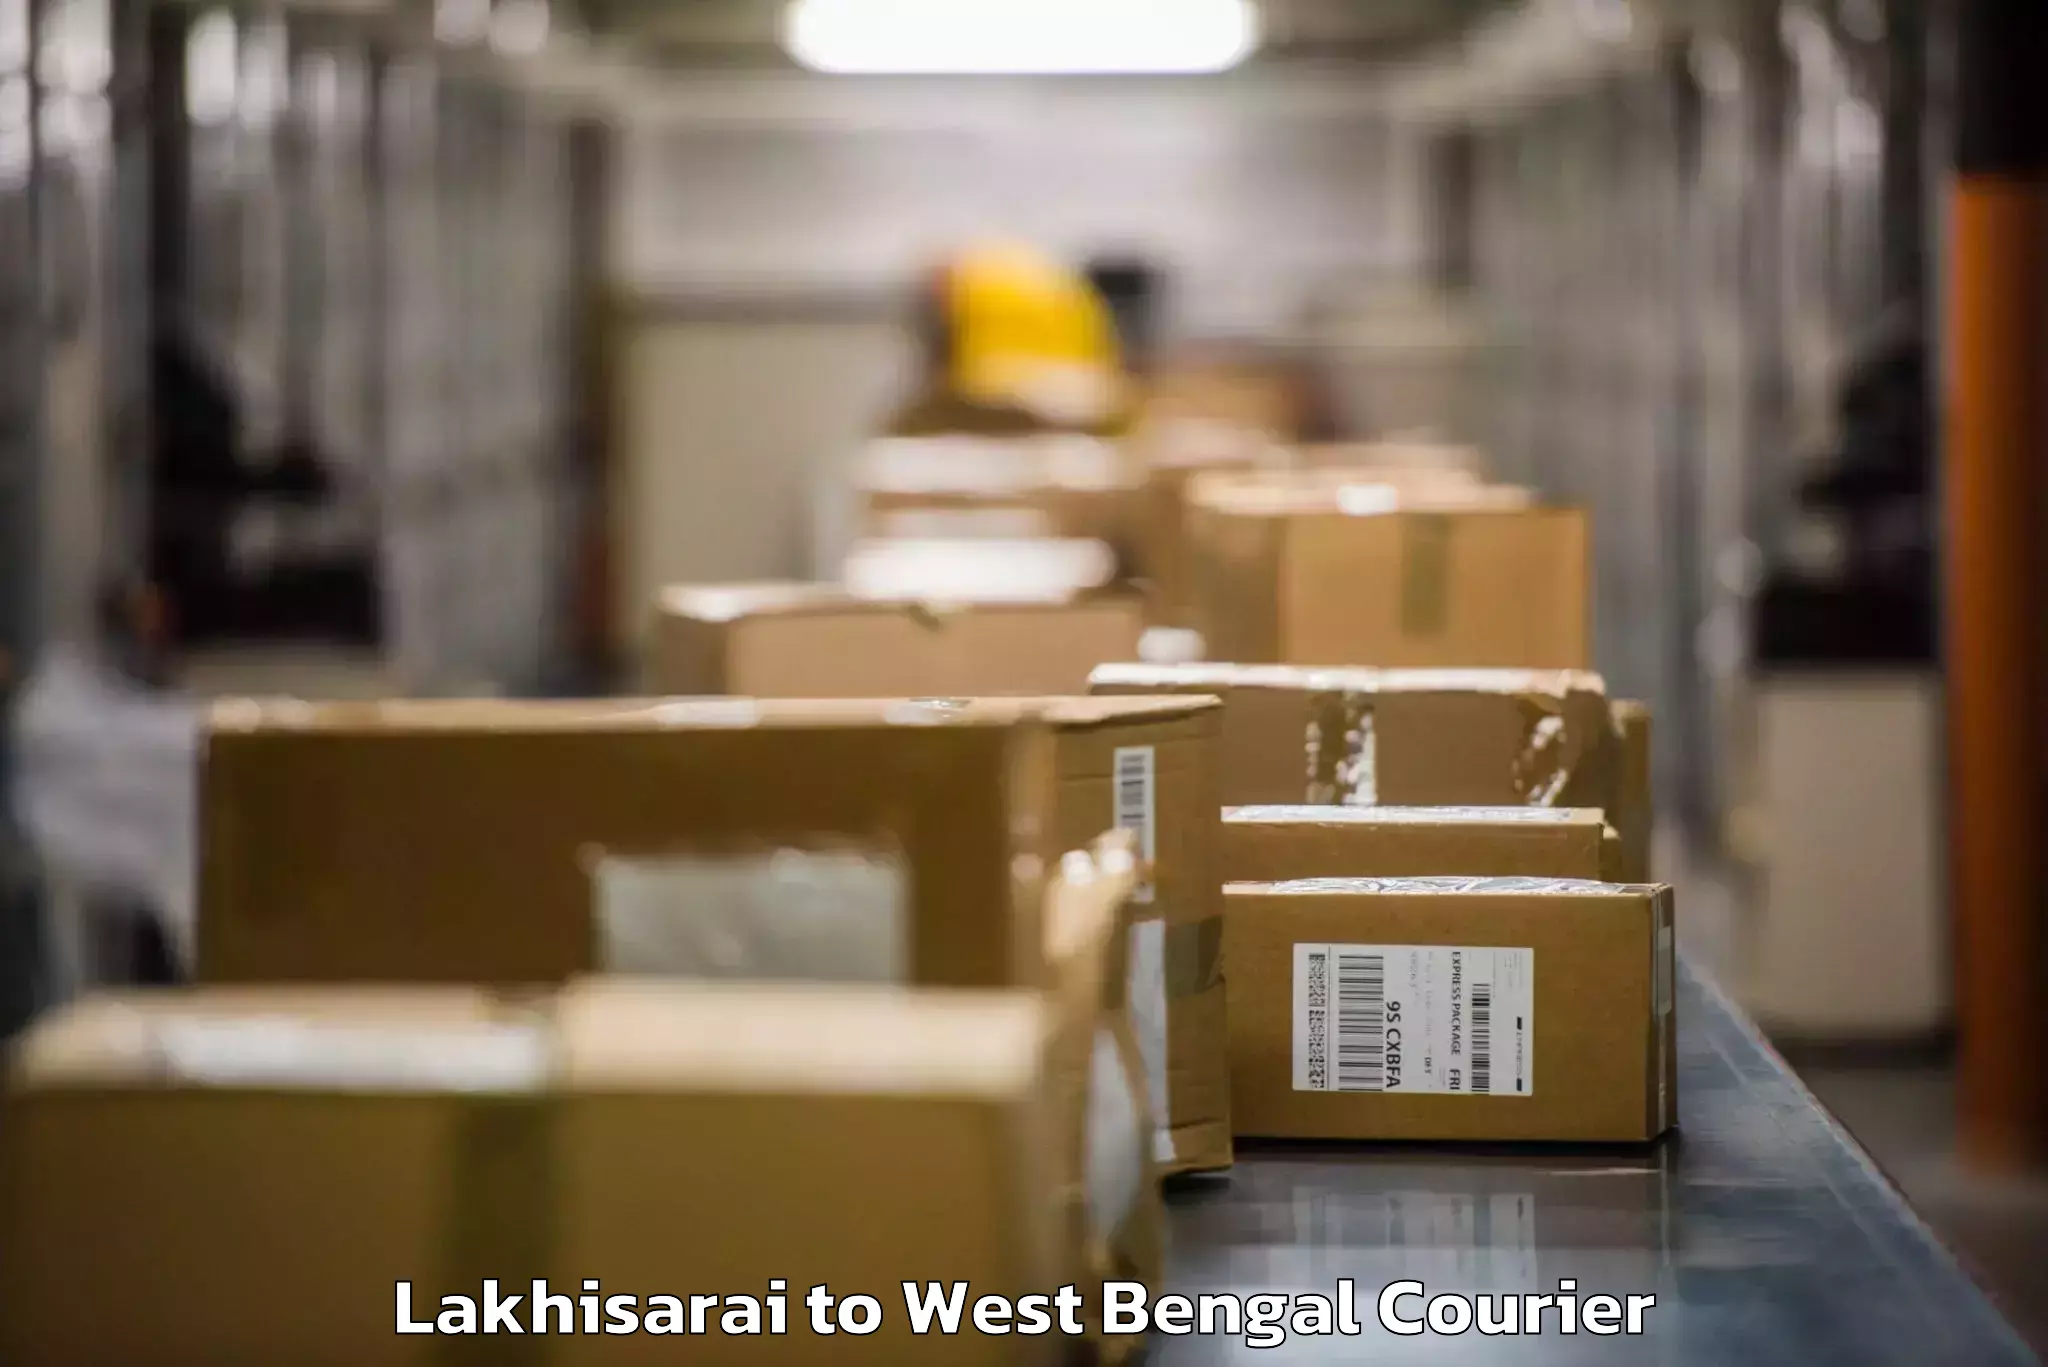 Luggage dispatch service Lakhisarai to Baghmundi